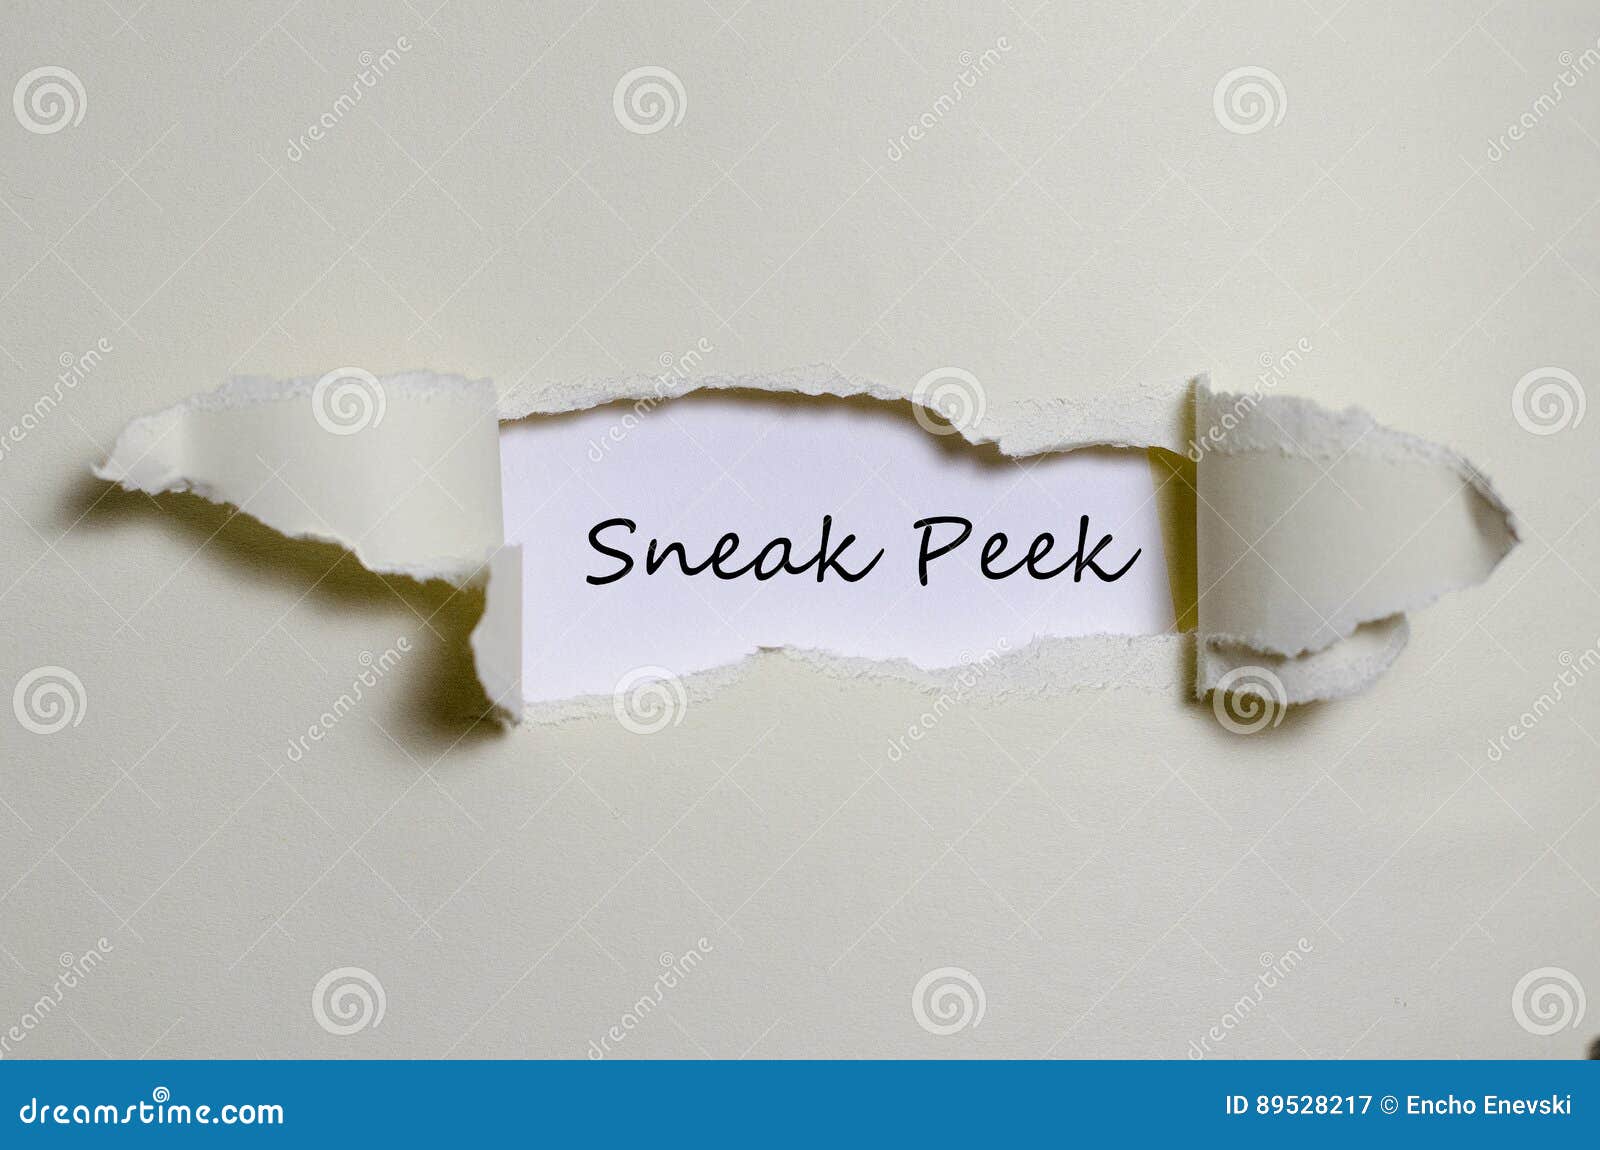 the word sneak peek appearing behind torn paper.